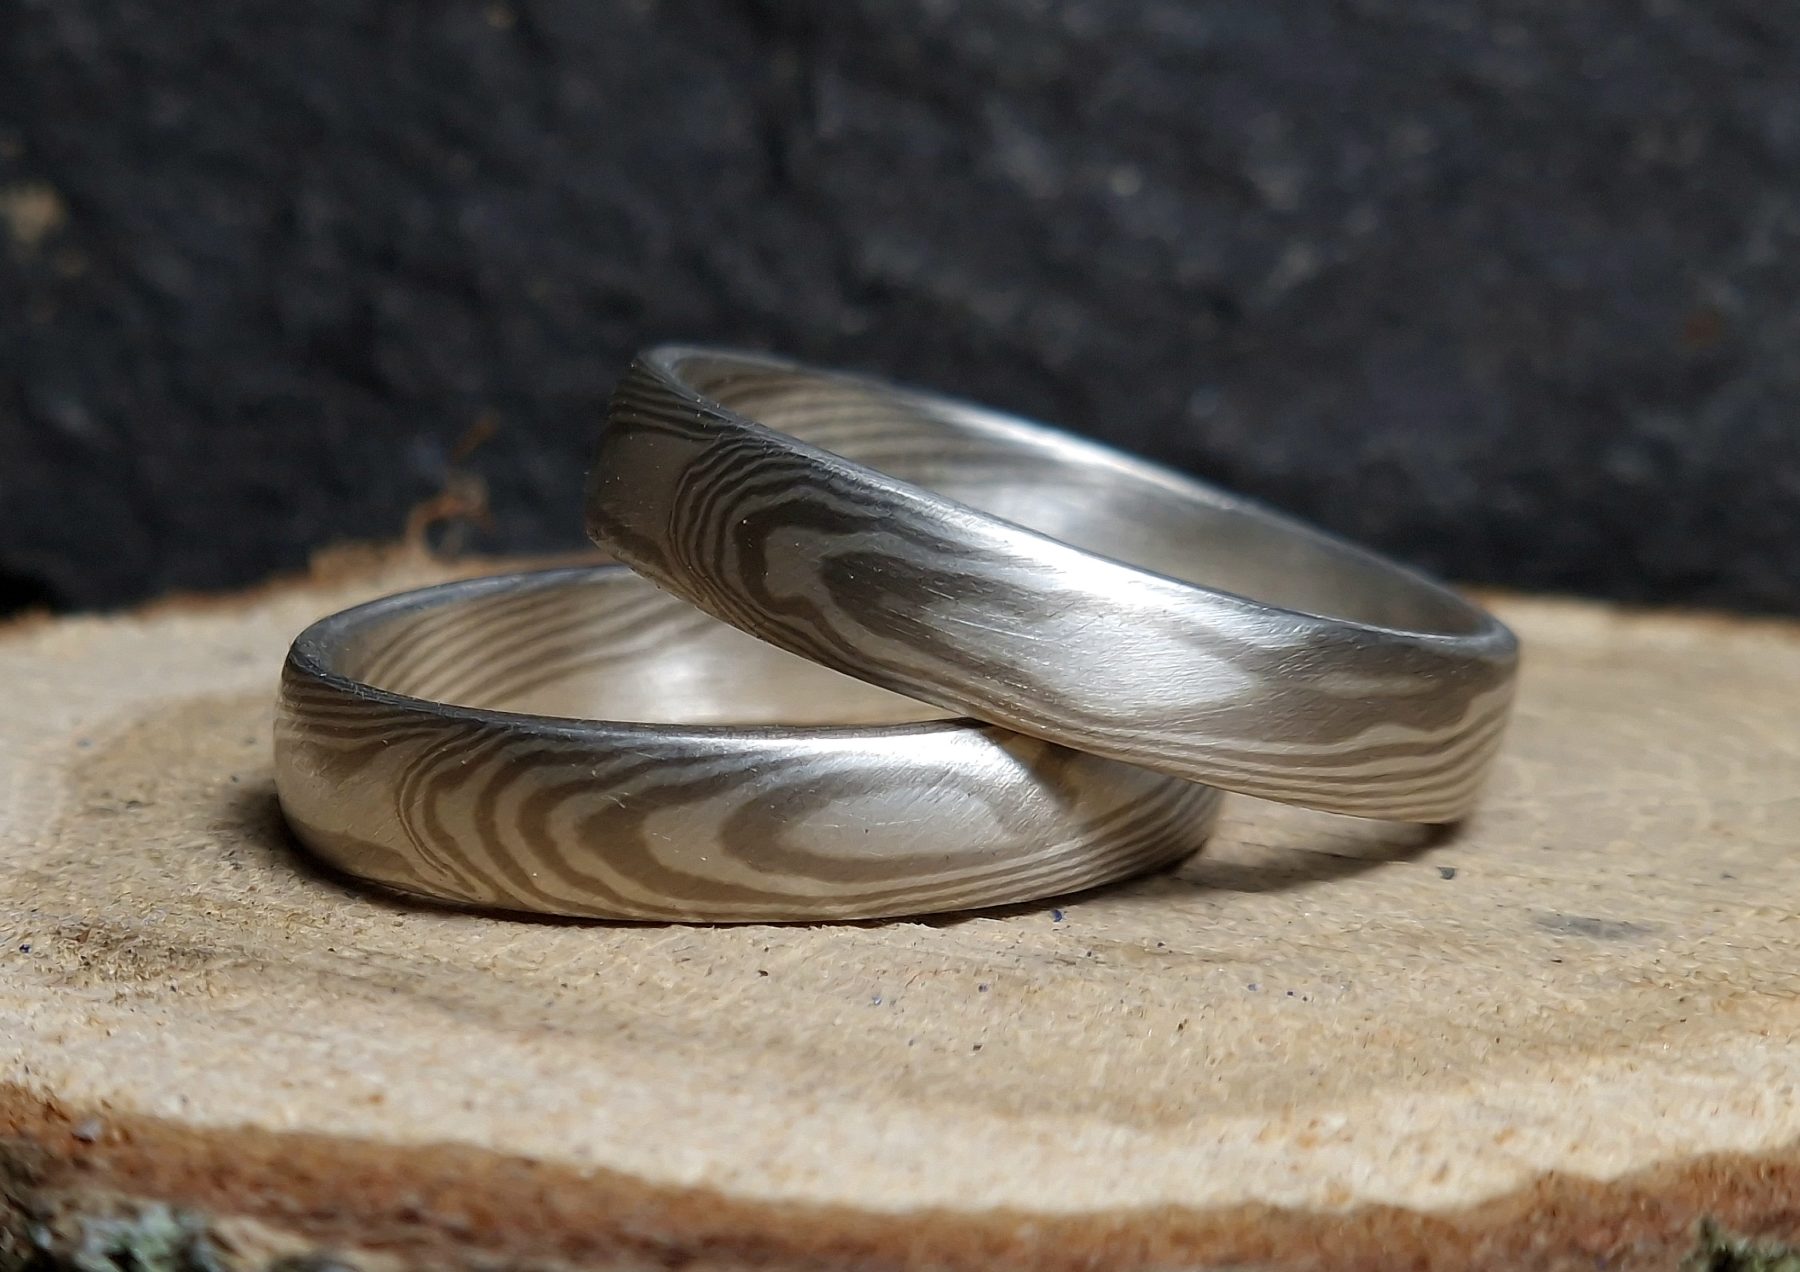 Mokume gane prsteny s klasickým vzorem, napodobujícím strukturu dřeva. Bílé paladiové zlato 585/1000, stříbro 925/1000, 15 vrstev.